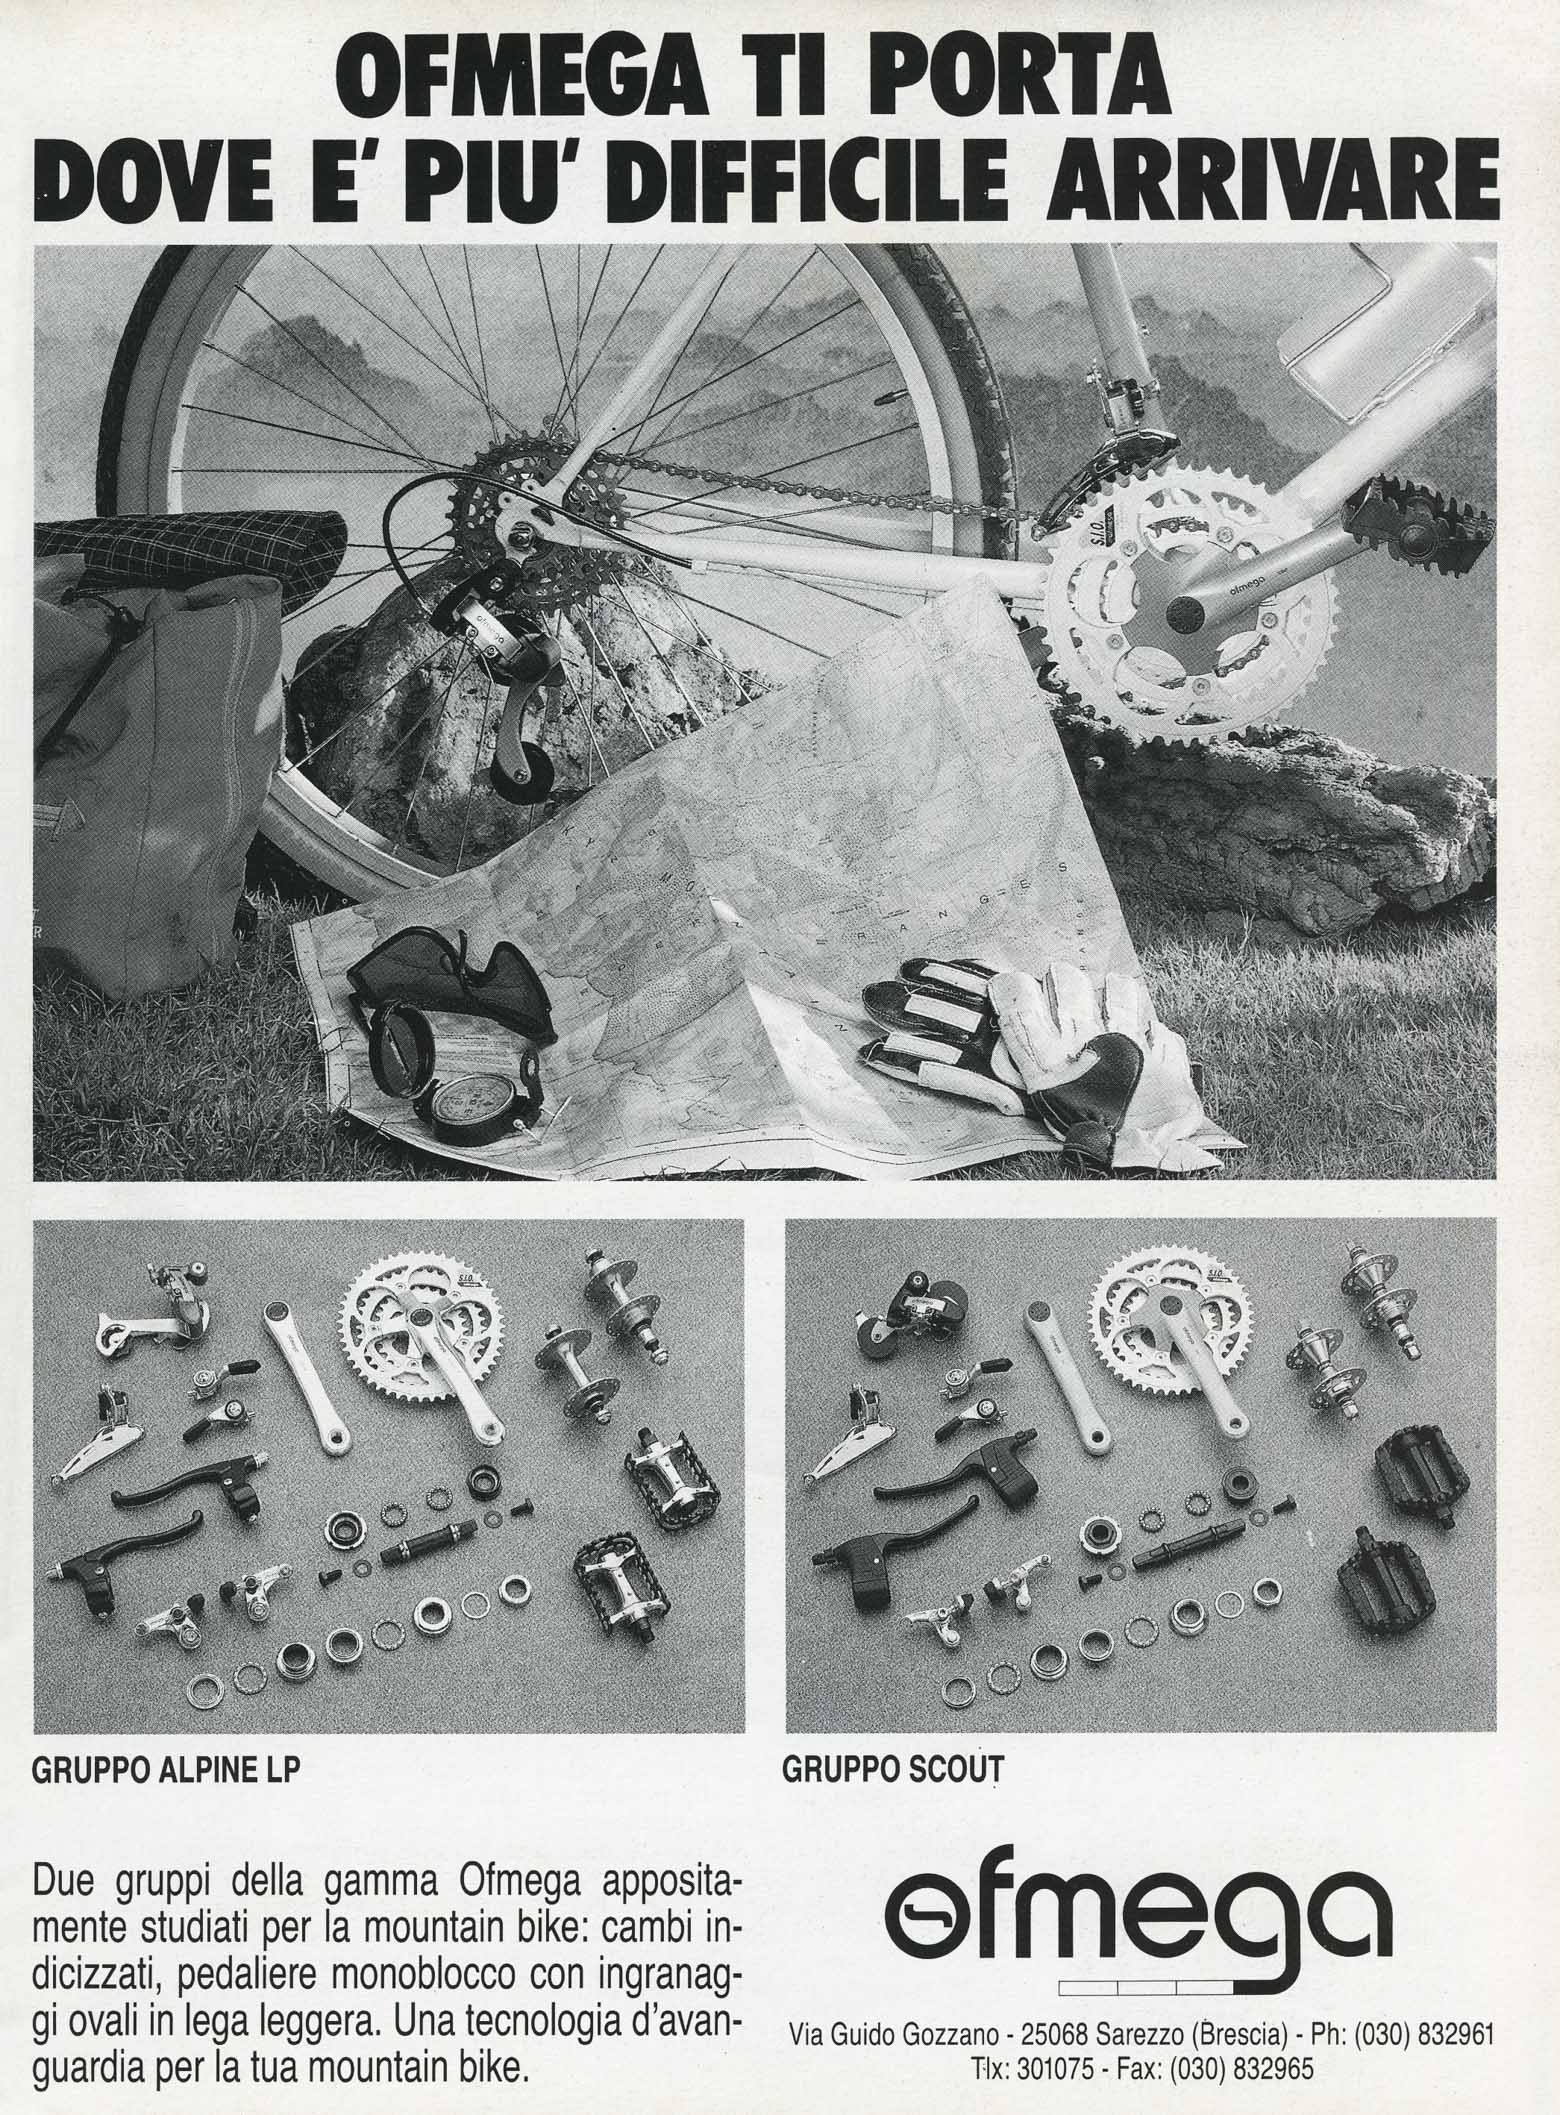 La Bicicletta 1989 April - Ofmega advert main image